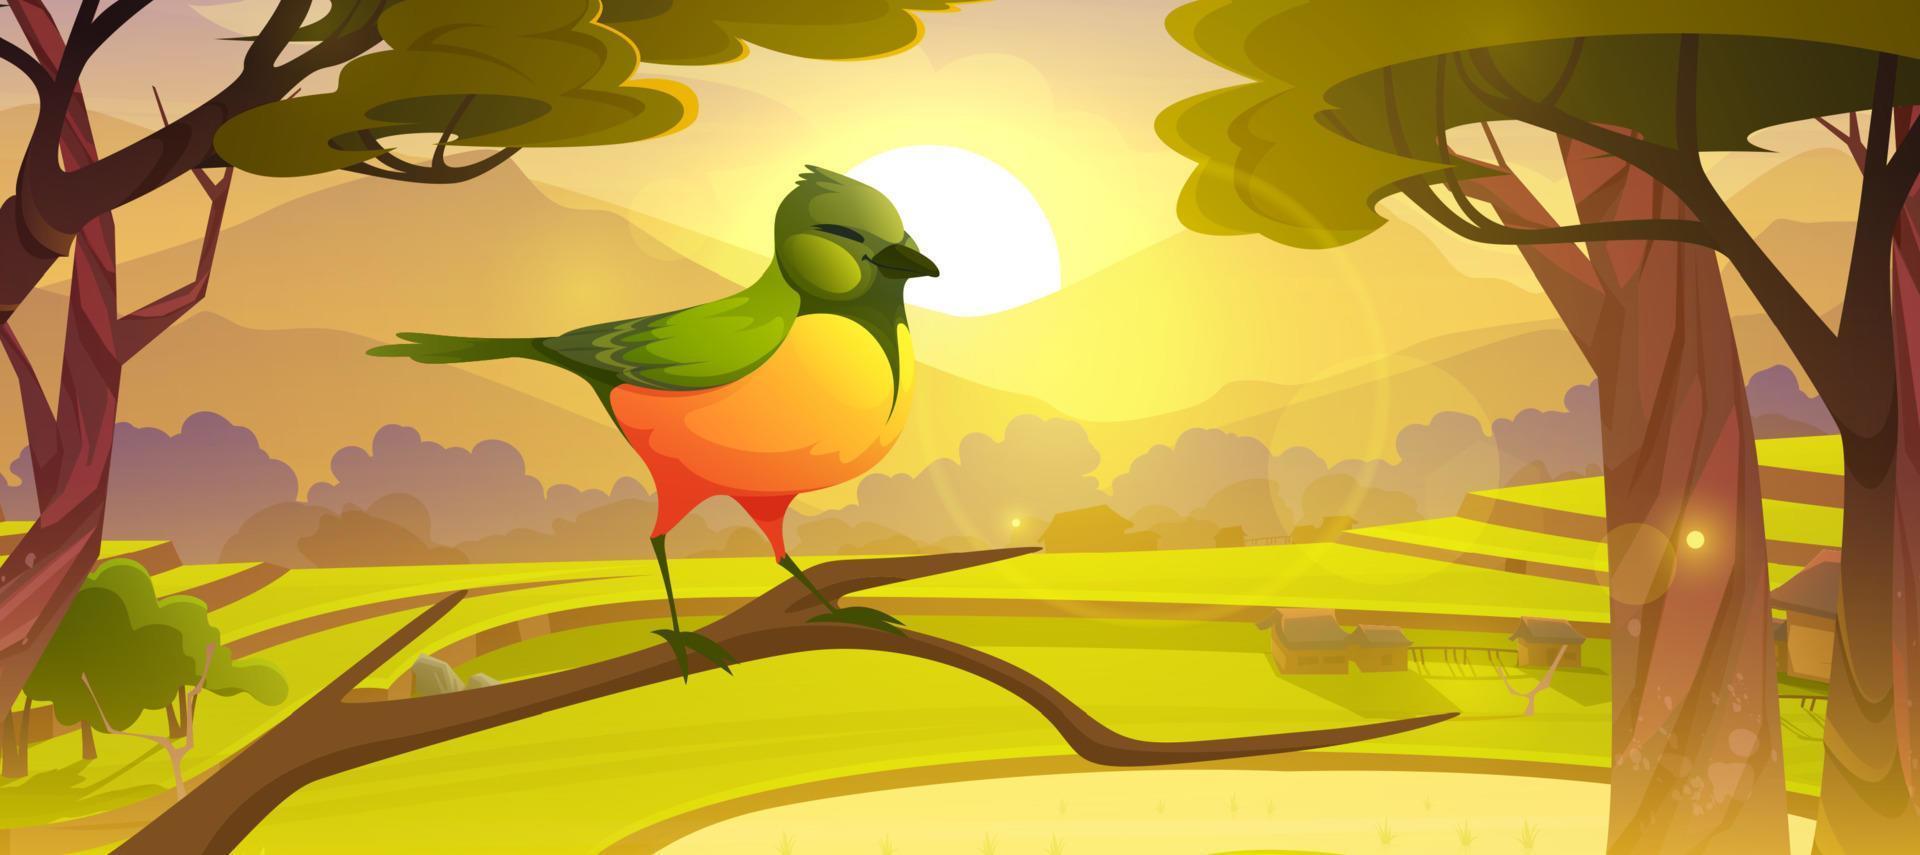 pájaro de dibujos animados sentado en la rama de un árbol, pajarito lindo vector